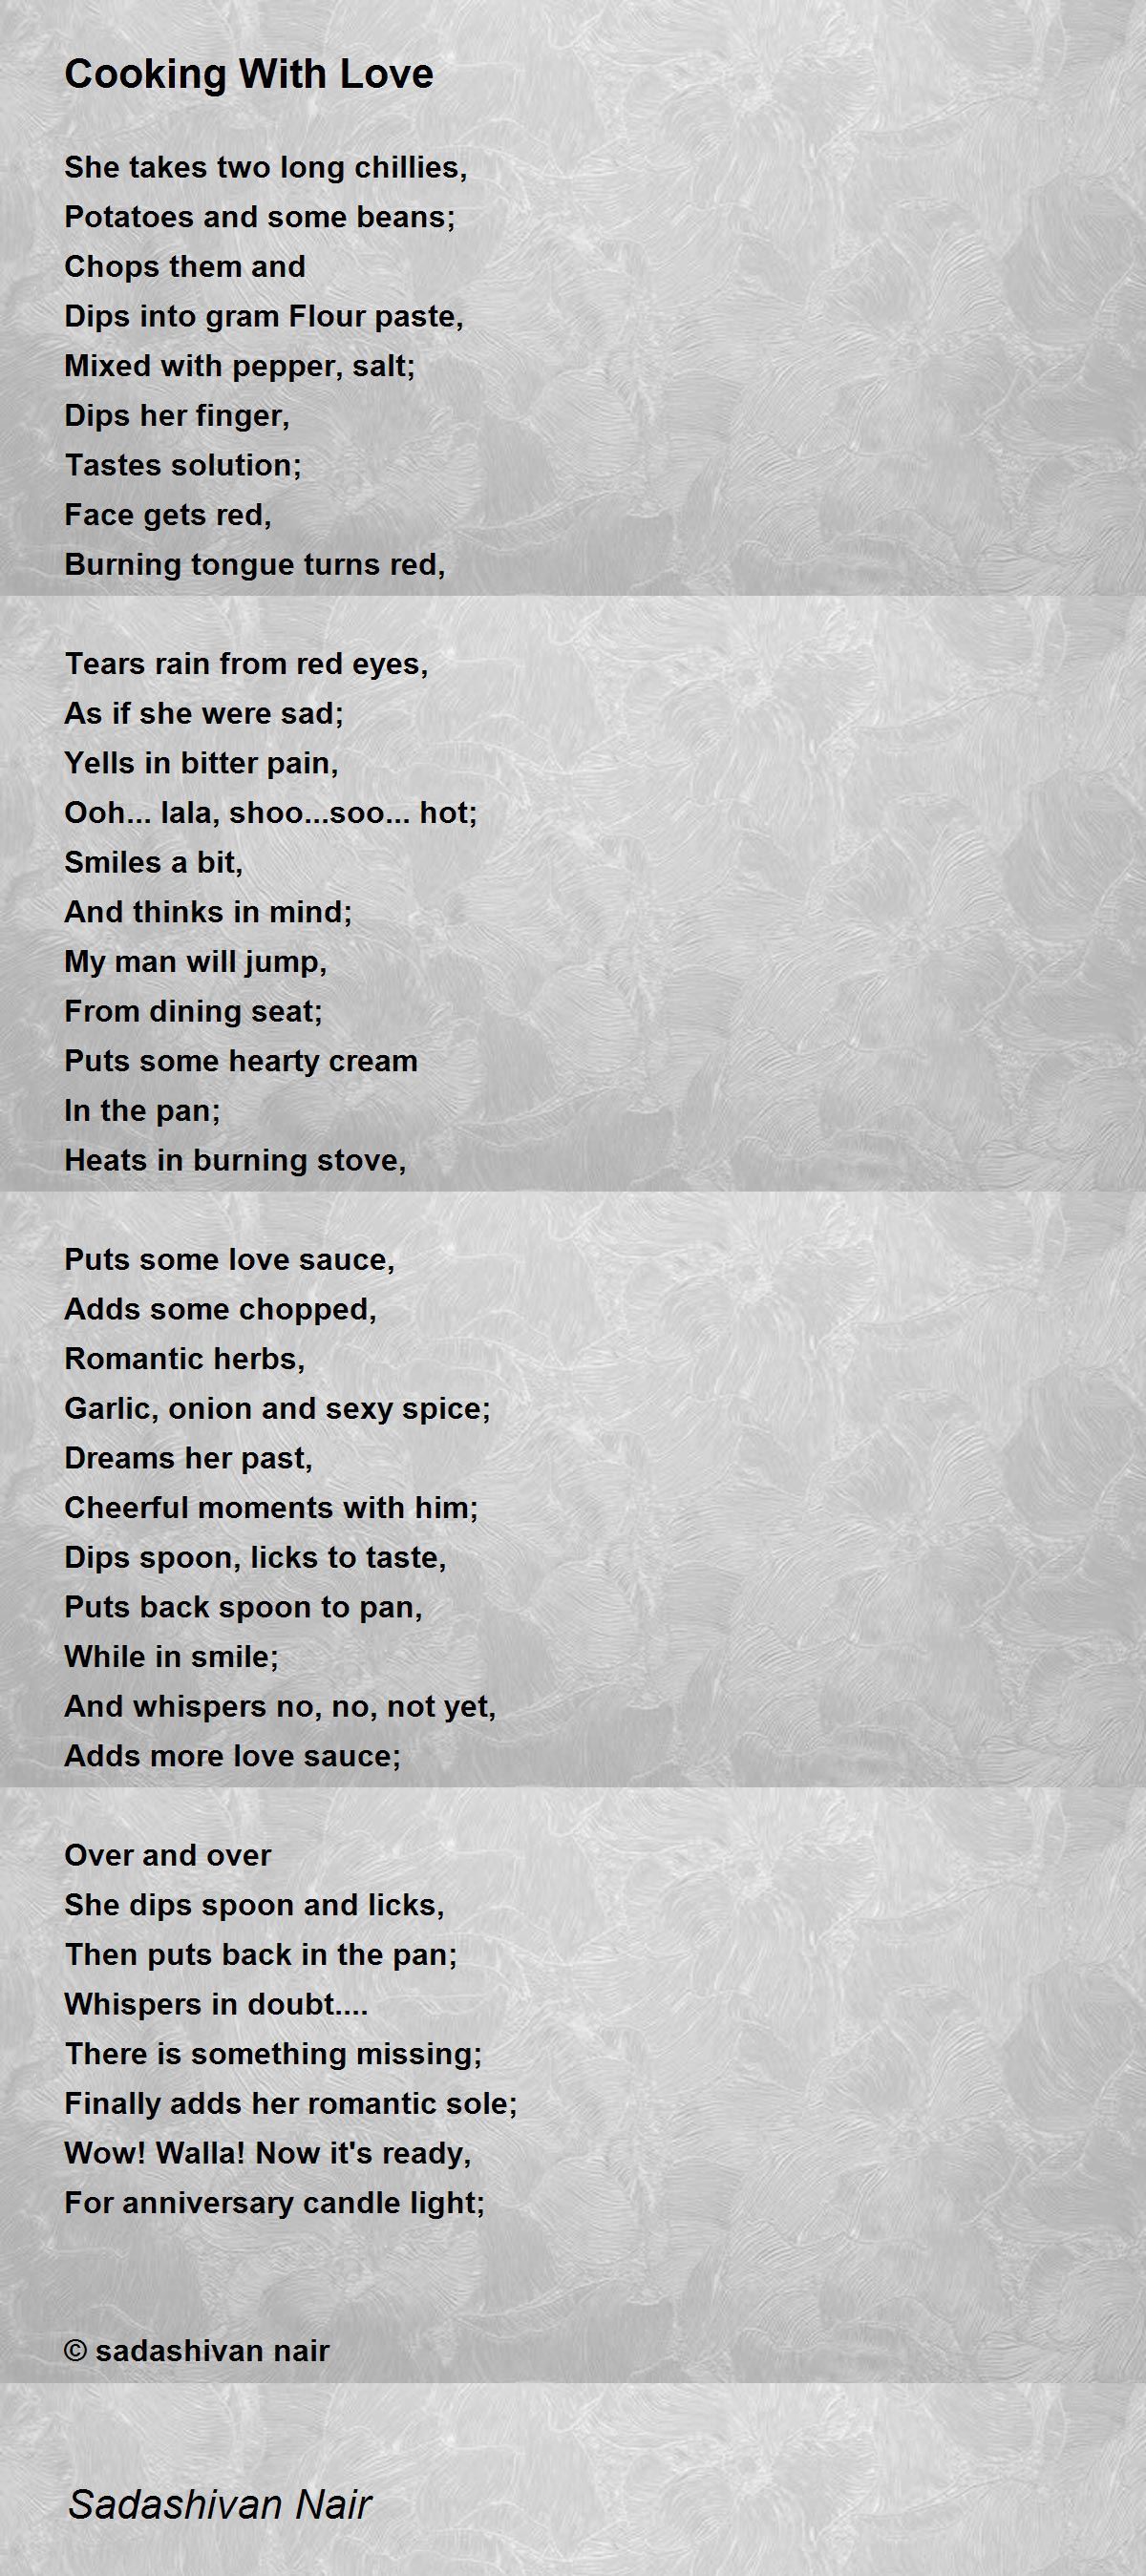 Cooking With Love Poem by Sadashivan Nair - Poem Hunter